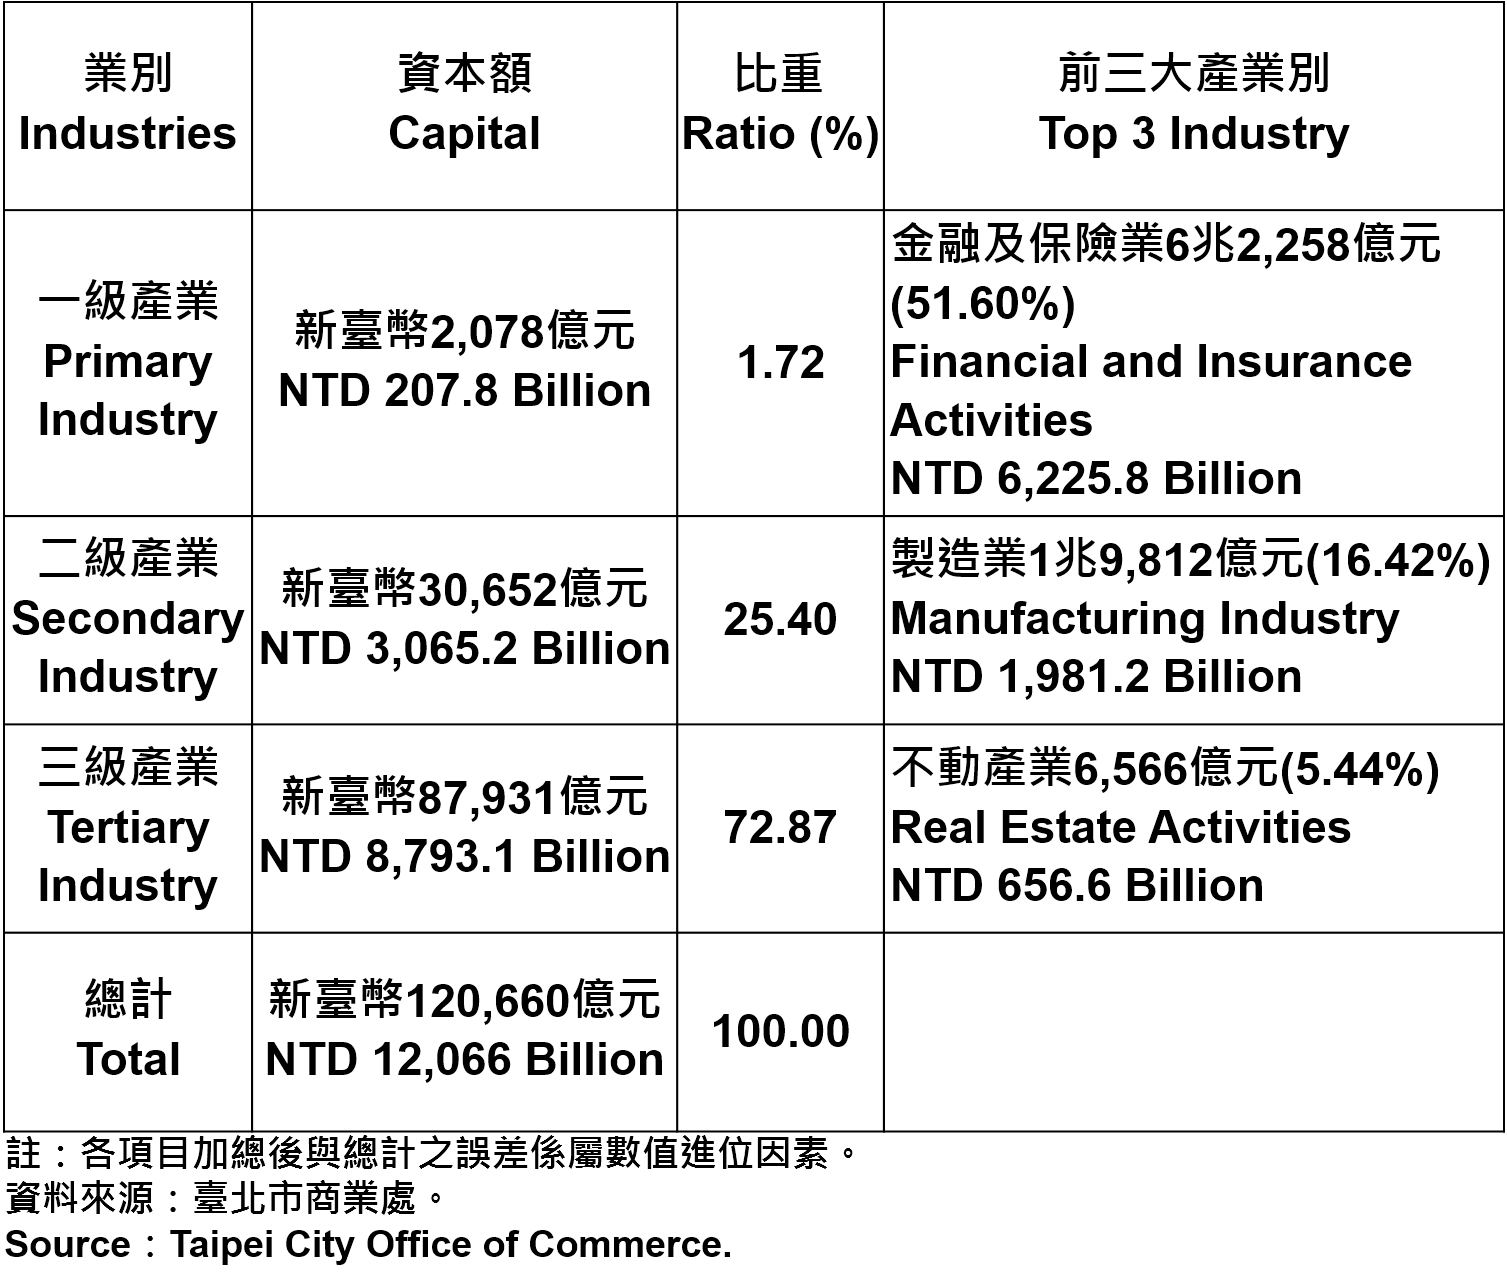 臺北市登記之公司資本總額—2018Q1 Capital for the Companies and Firms Registered in Taipei City—2018Q1